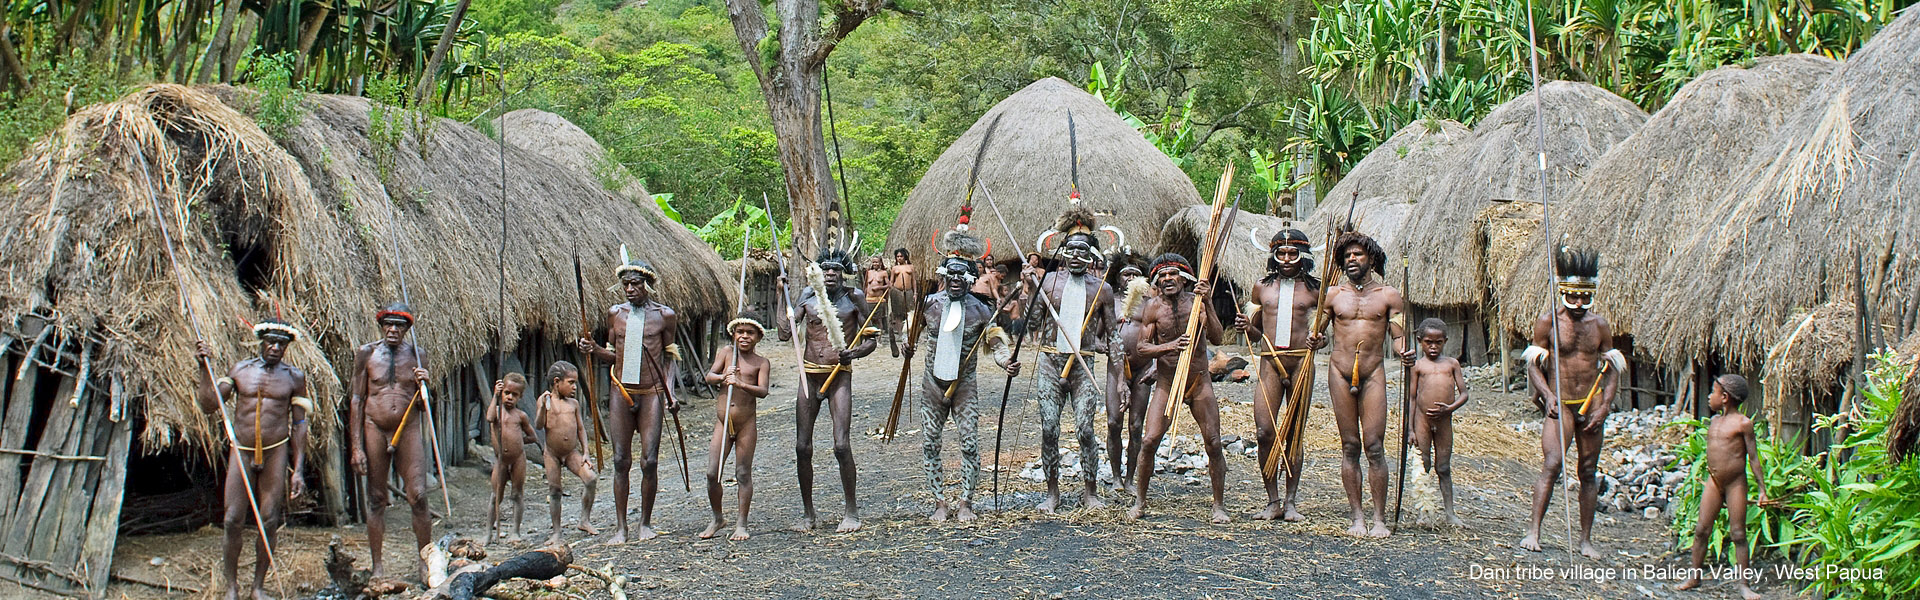 Dani tribe village in Baliem Valley, West Papua